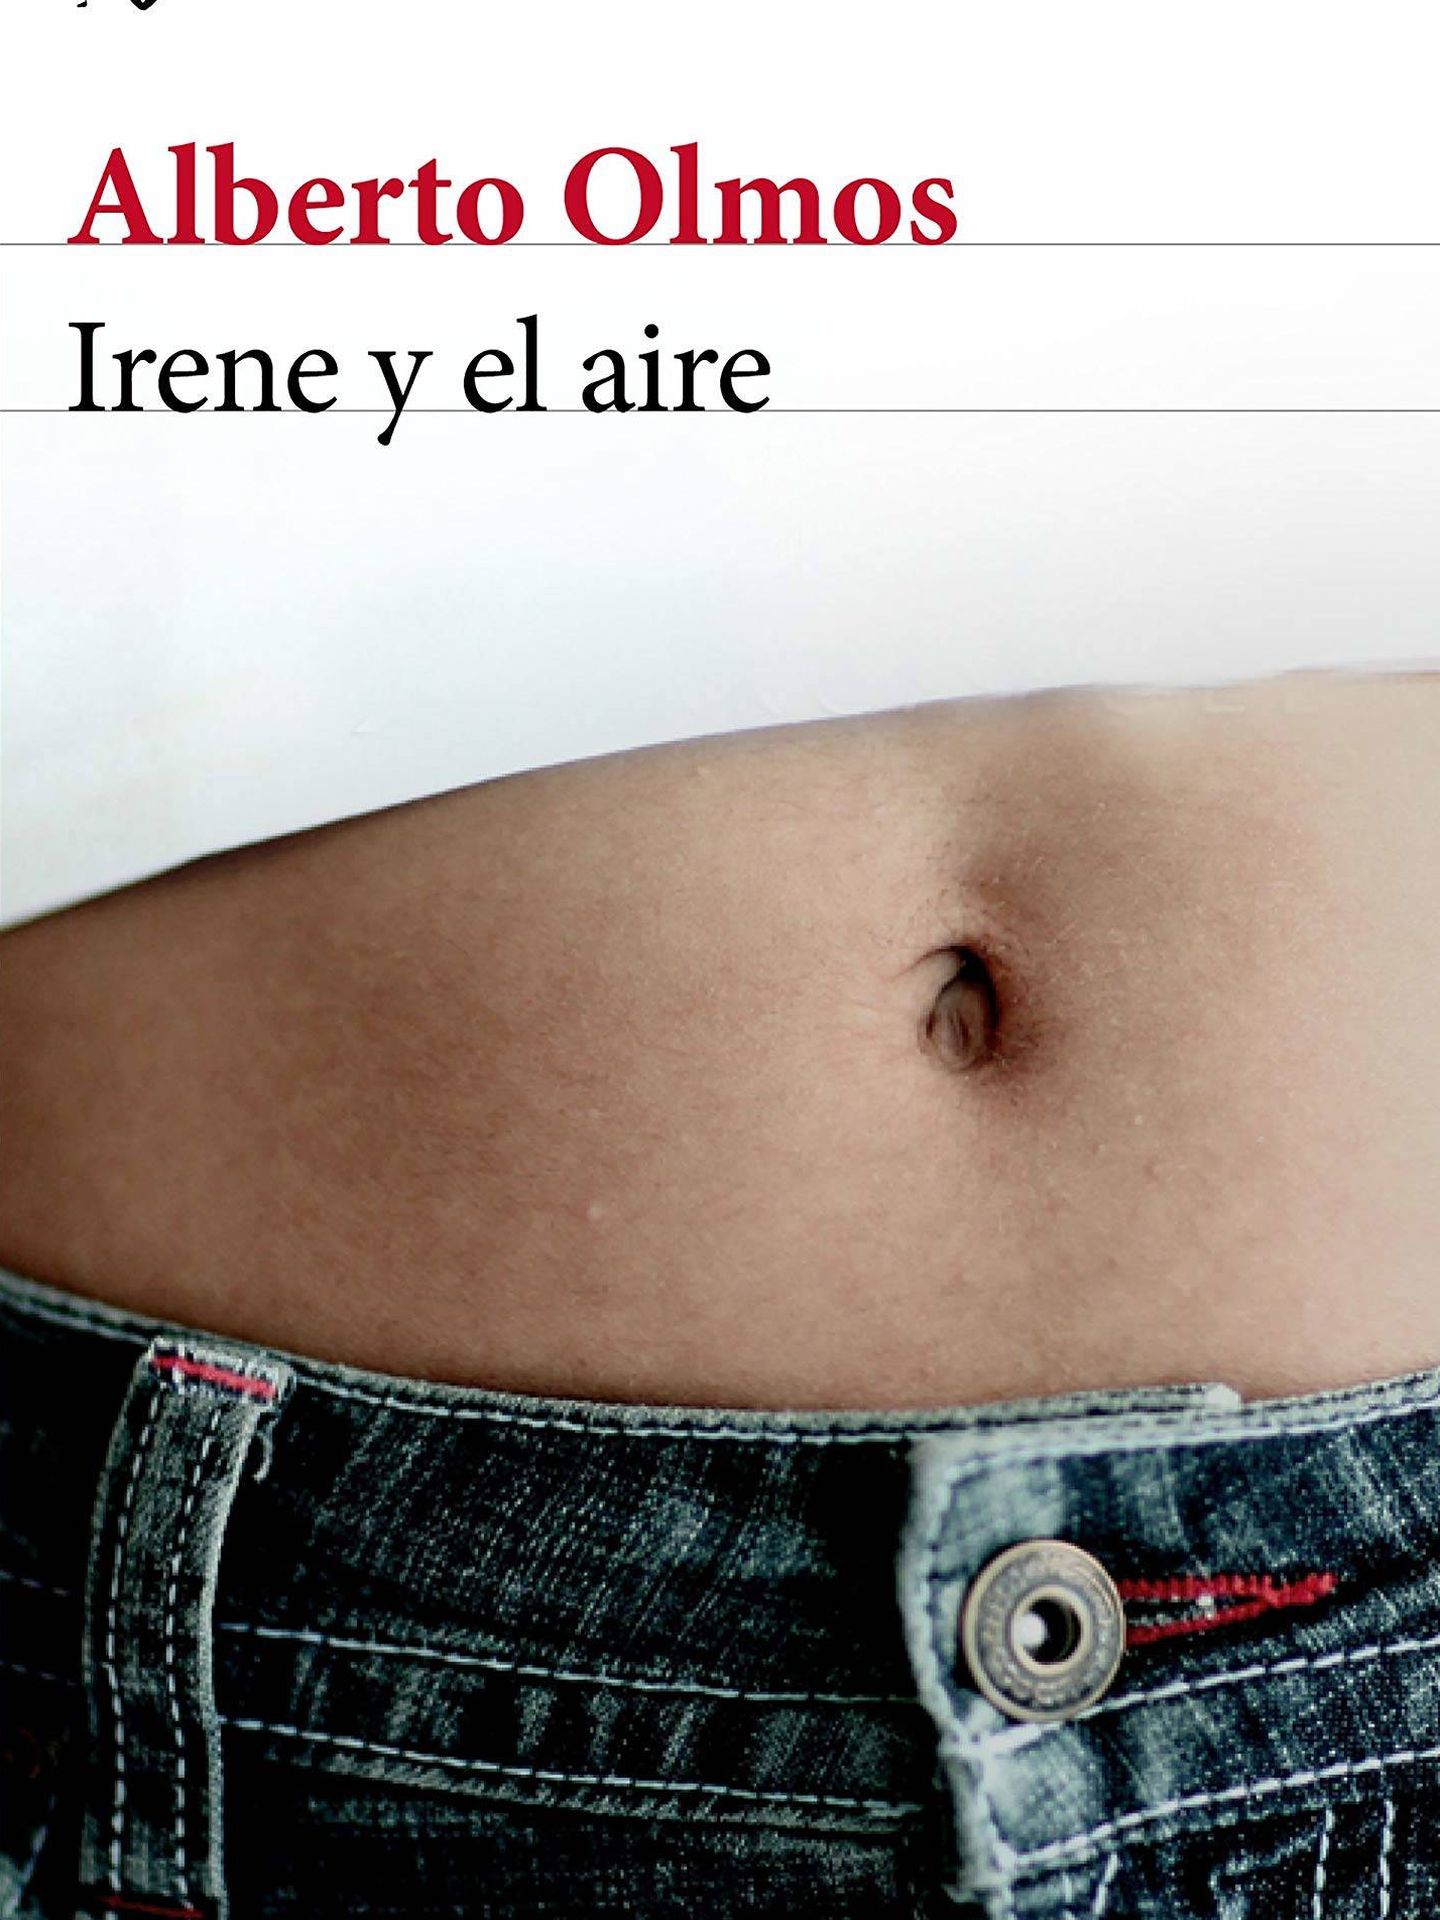 'Irene y el aire'.